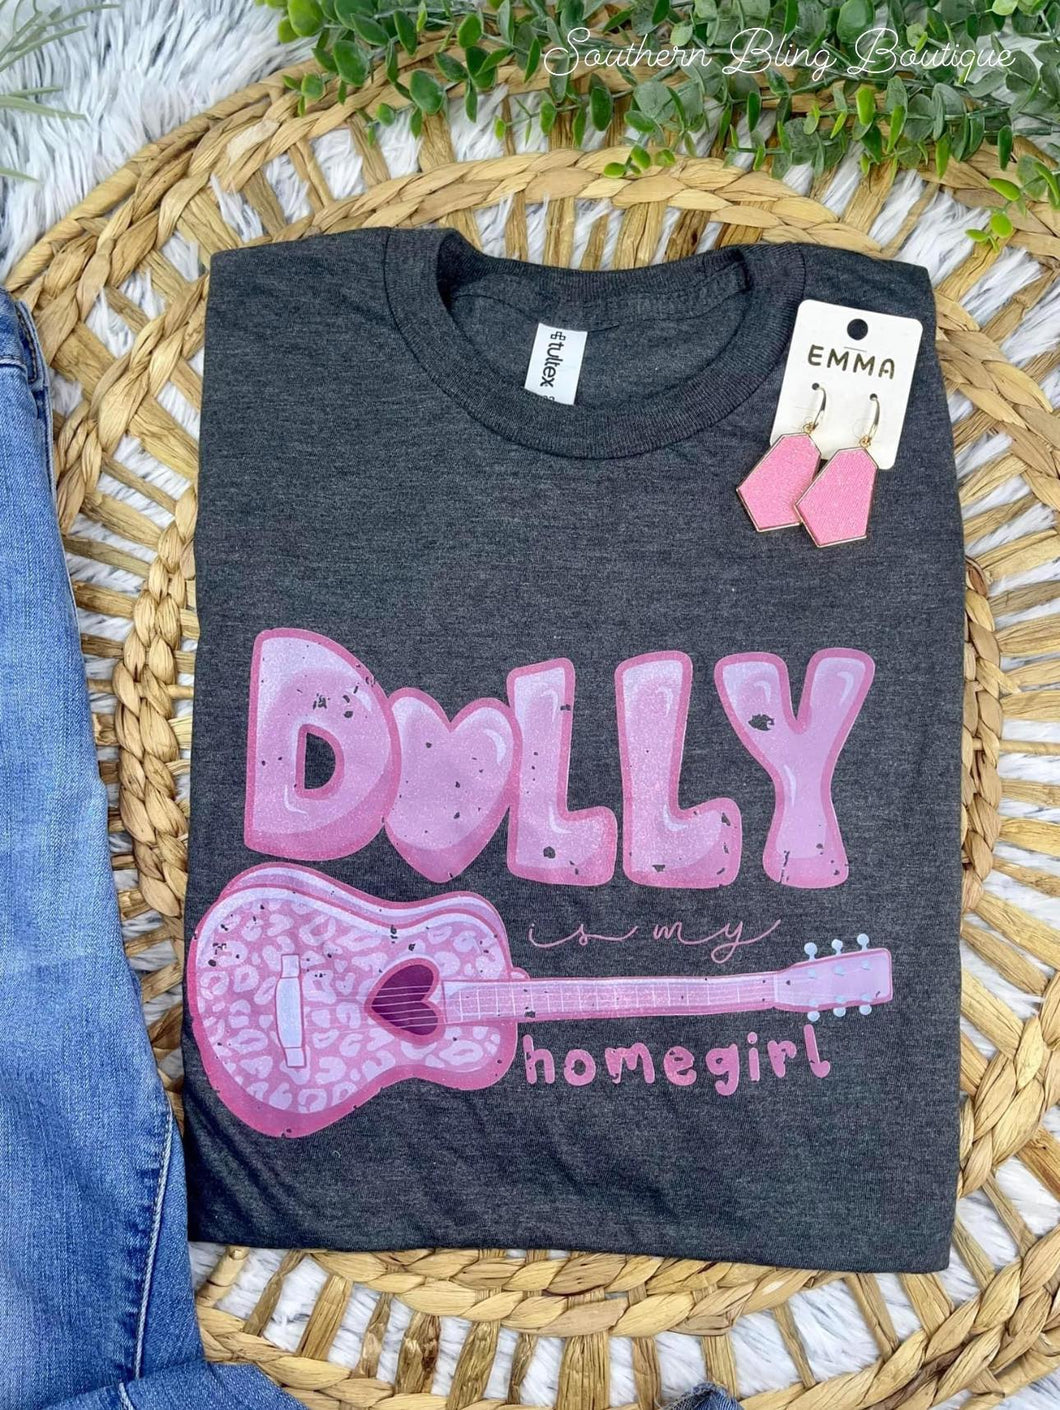 Dolly is my Homegirl Tee